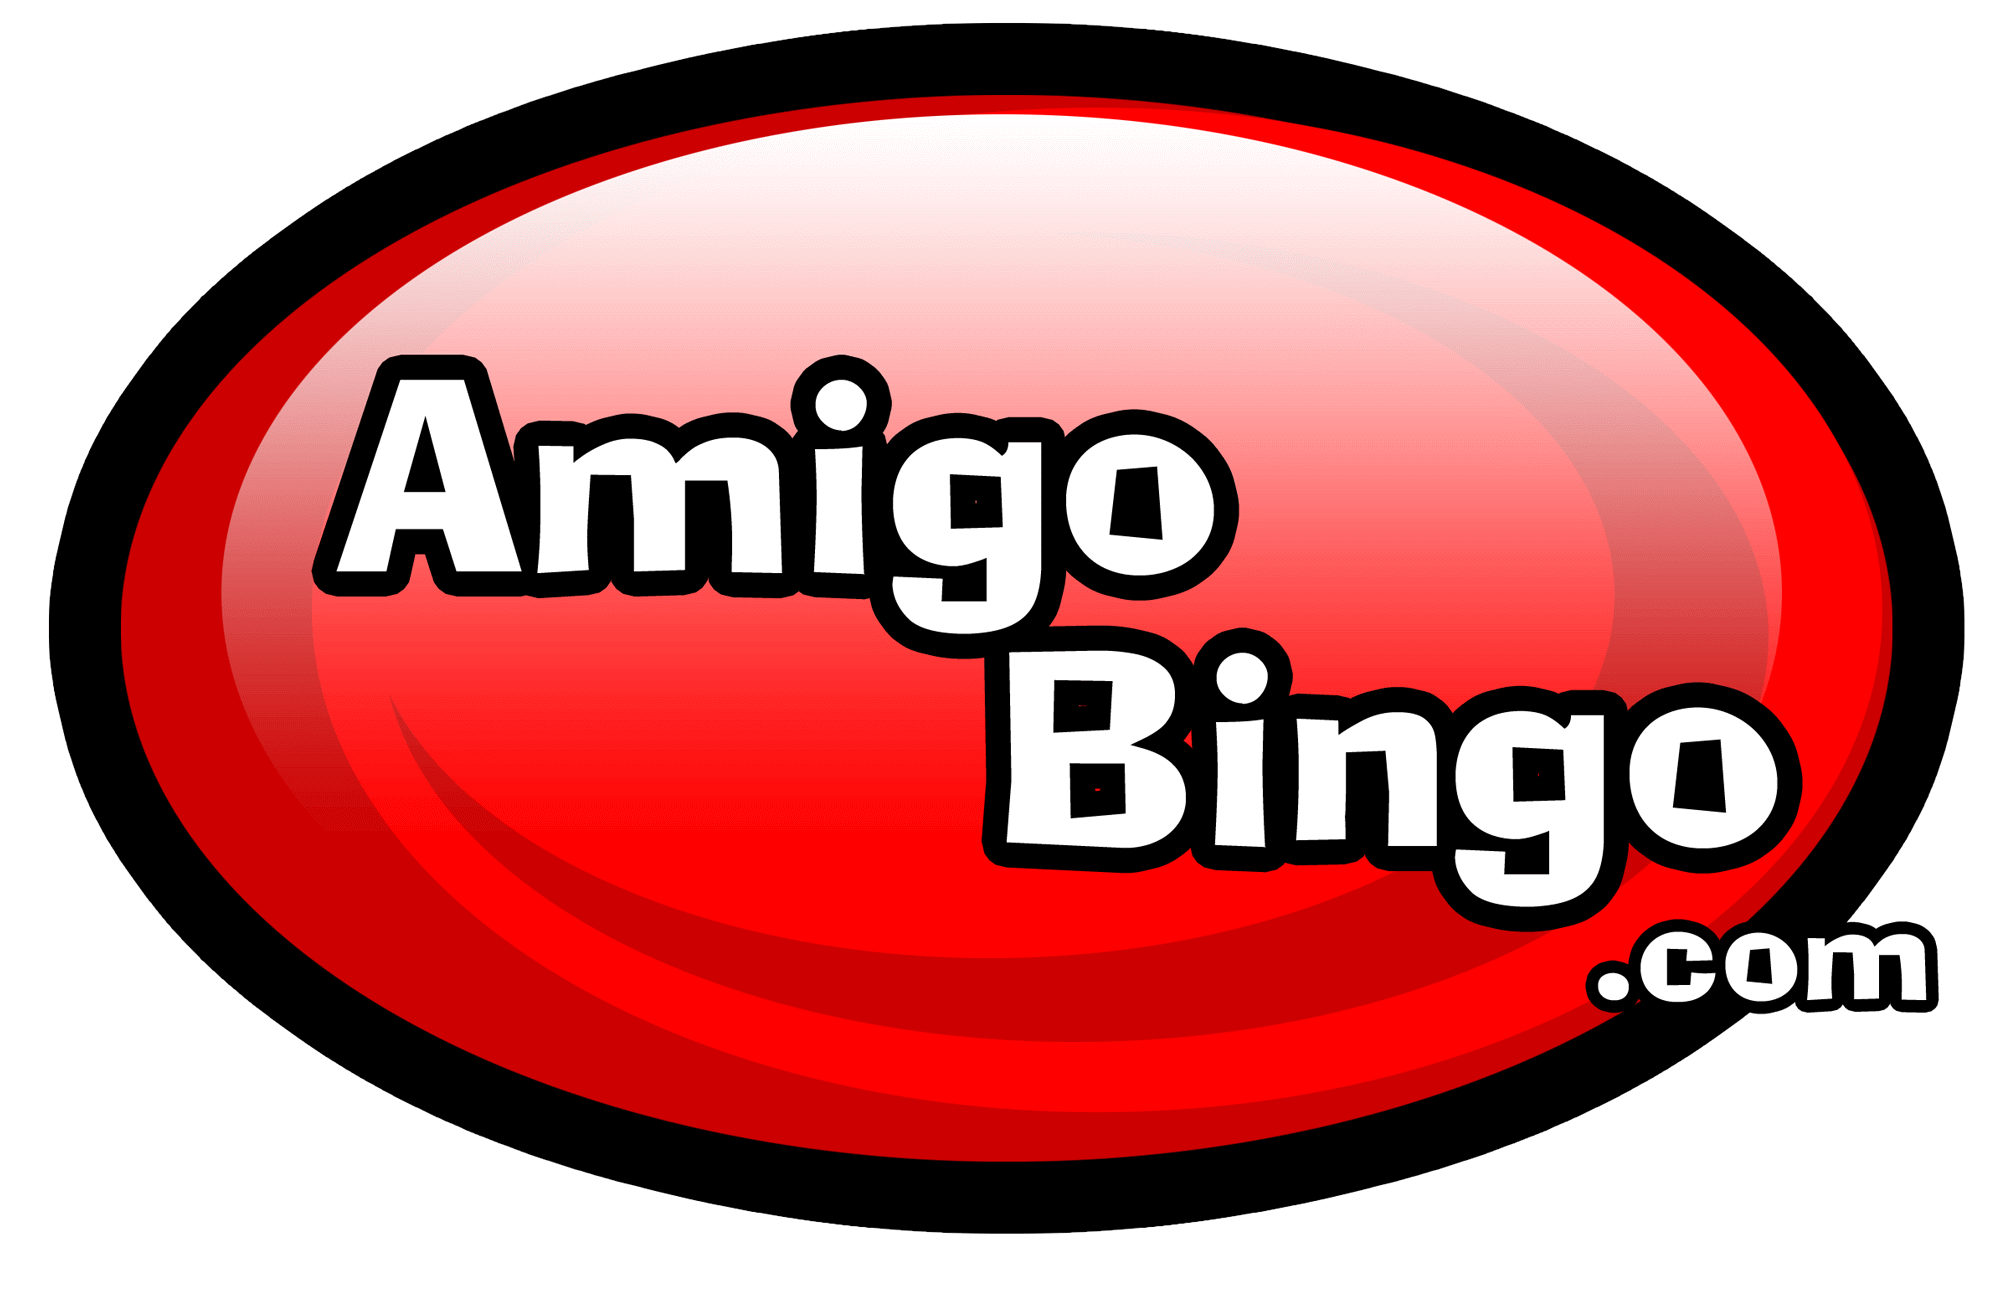 Amigo's 12 Days of Chritmas announced